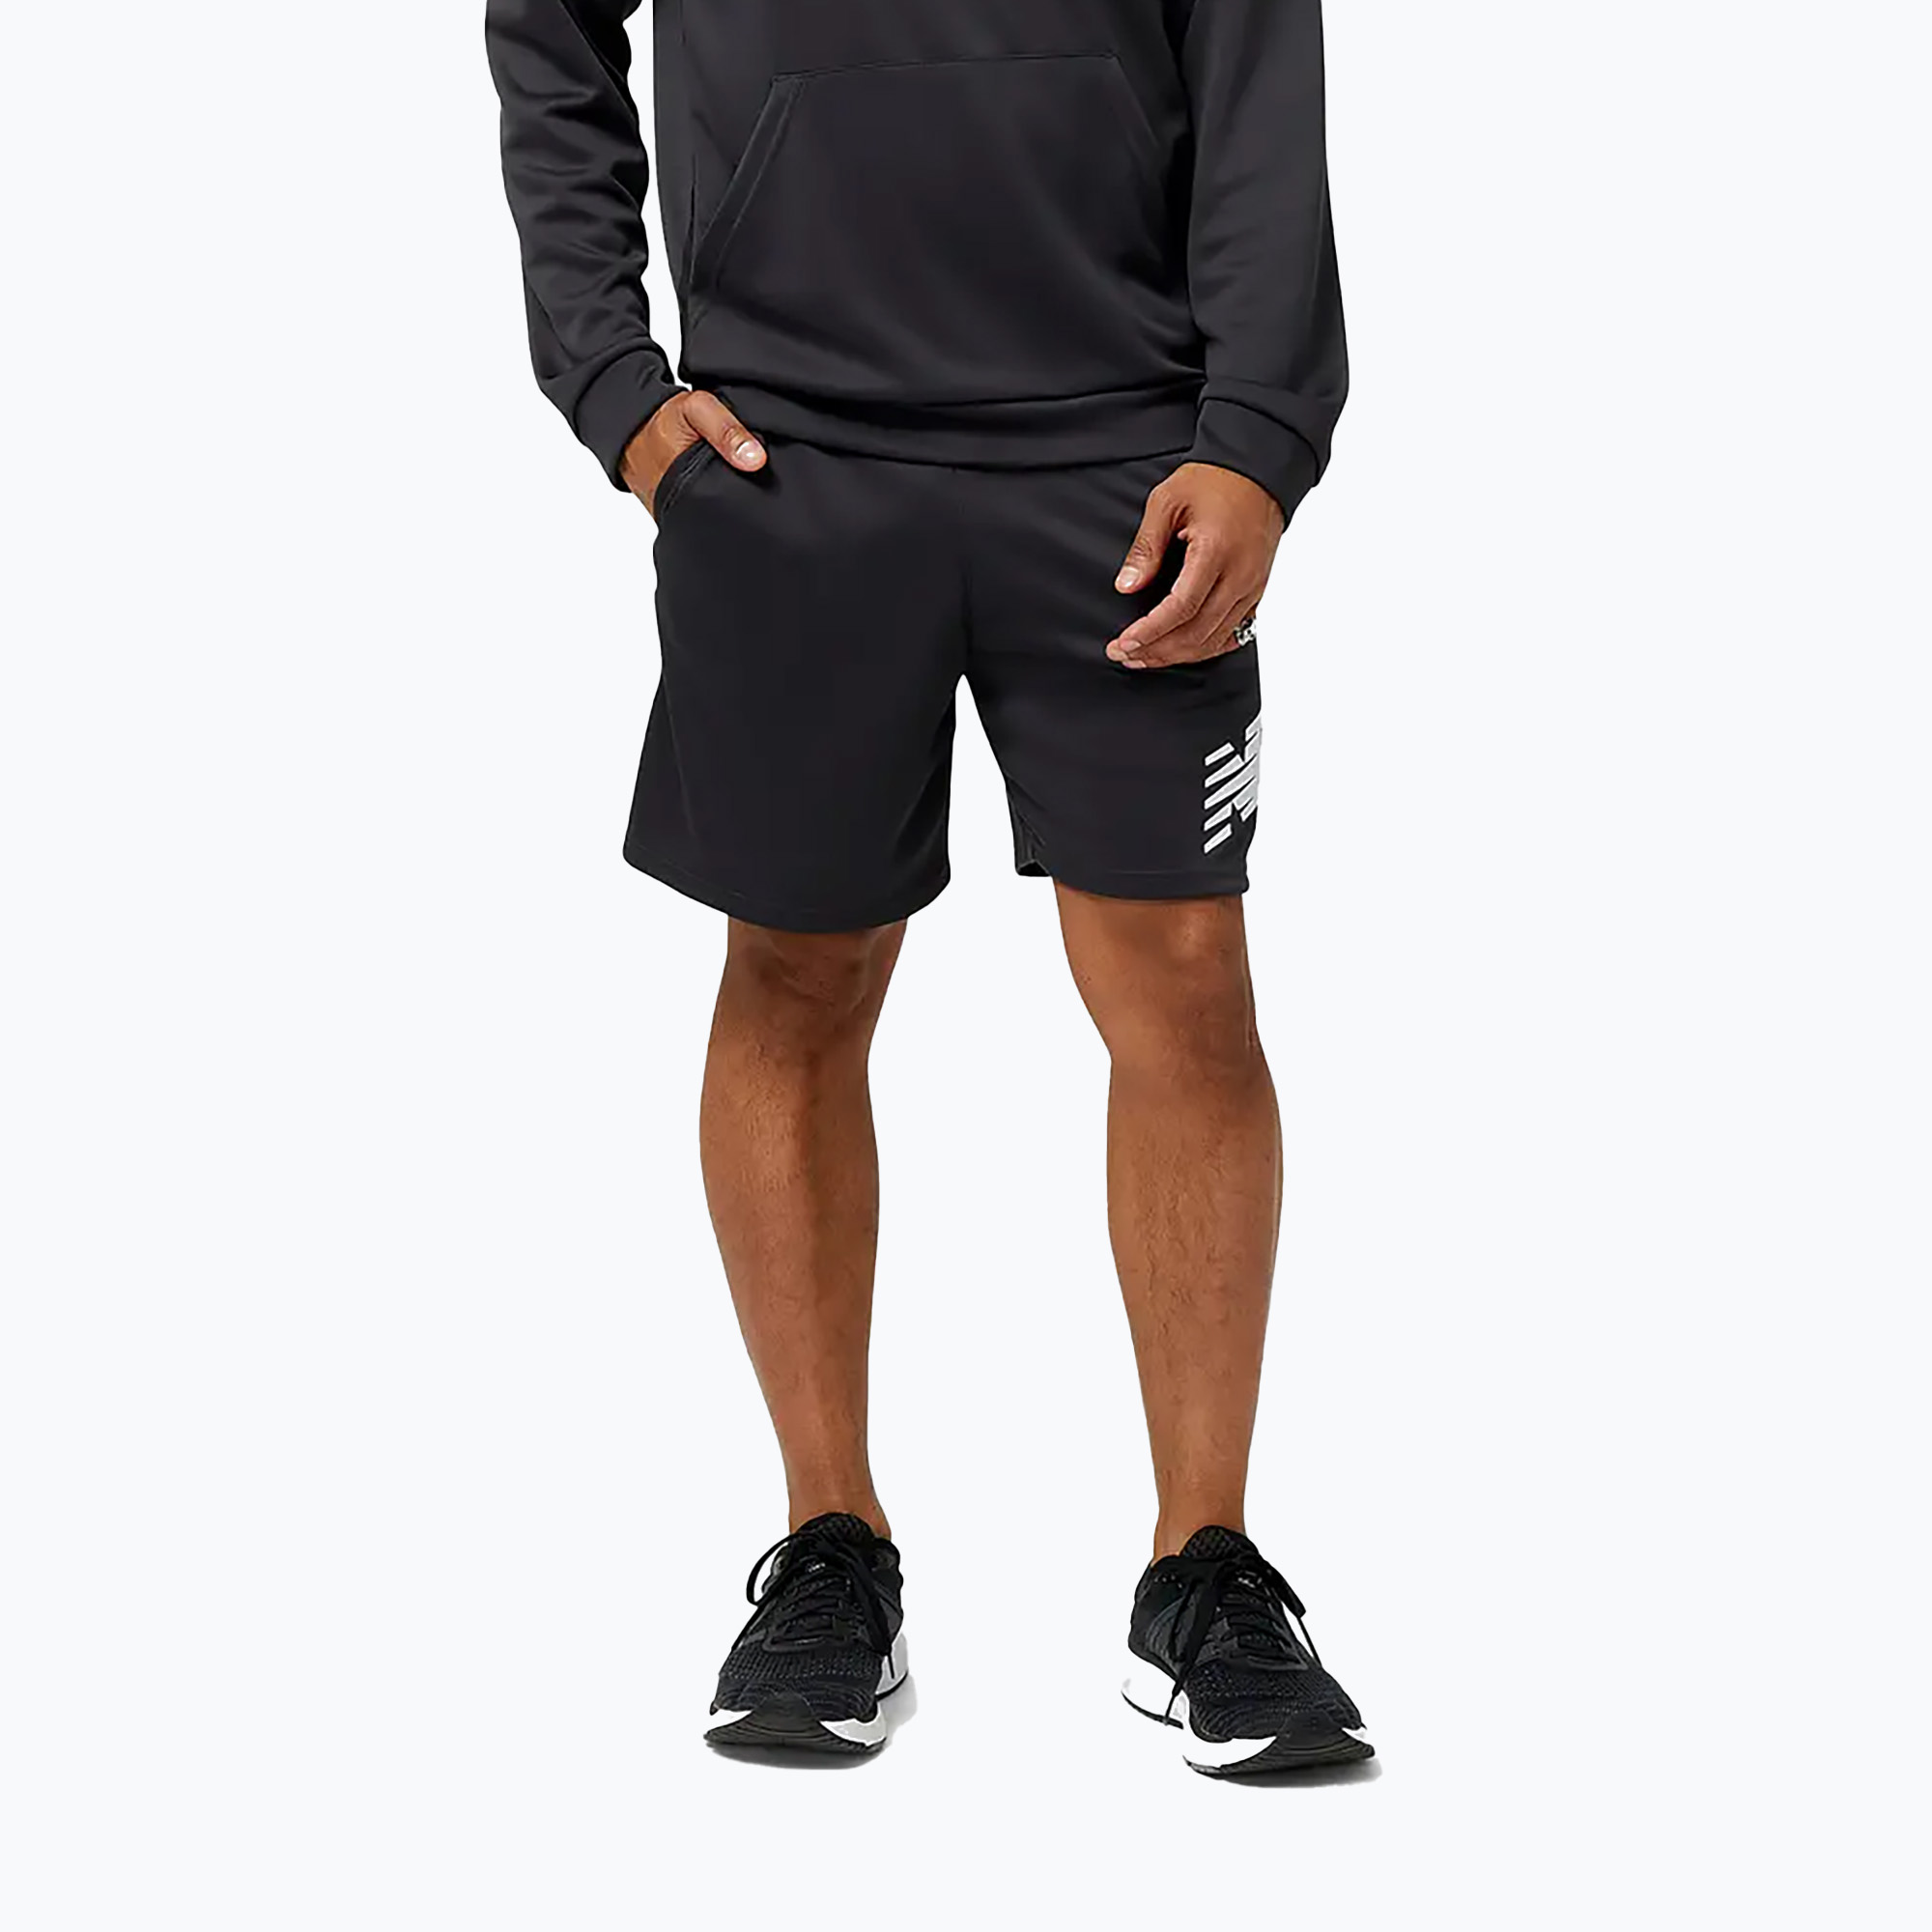 New Balance pánske futbalové tréningové šortky Tenacity black MS31127PHM